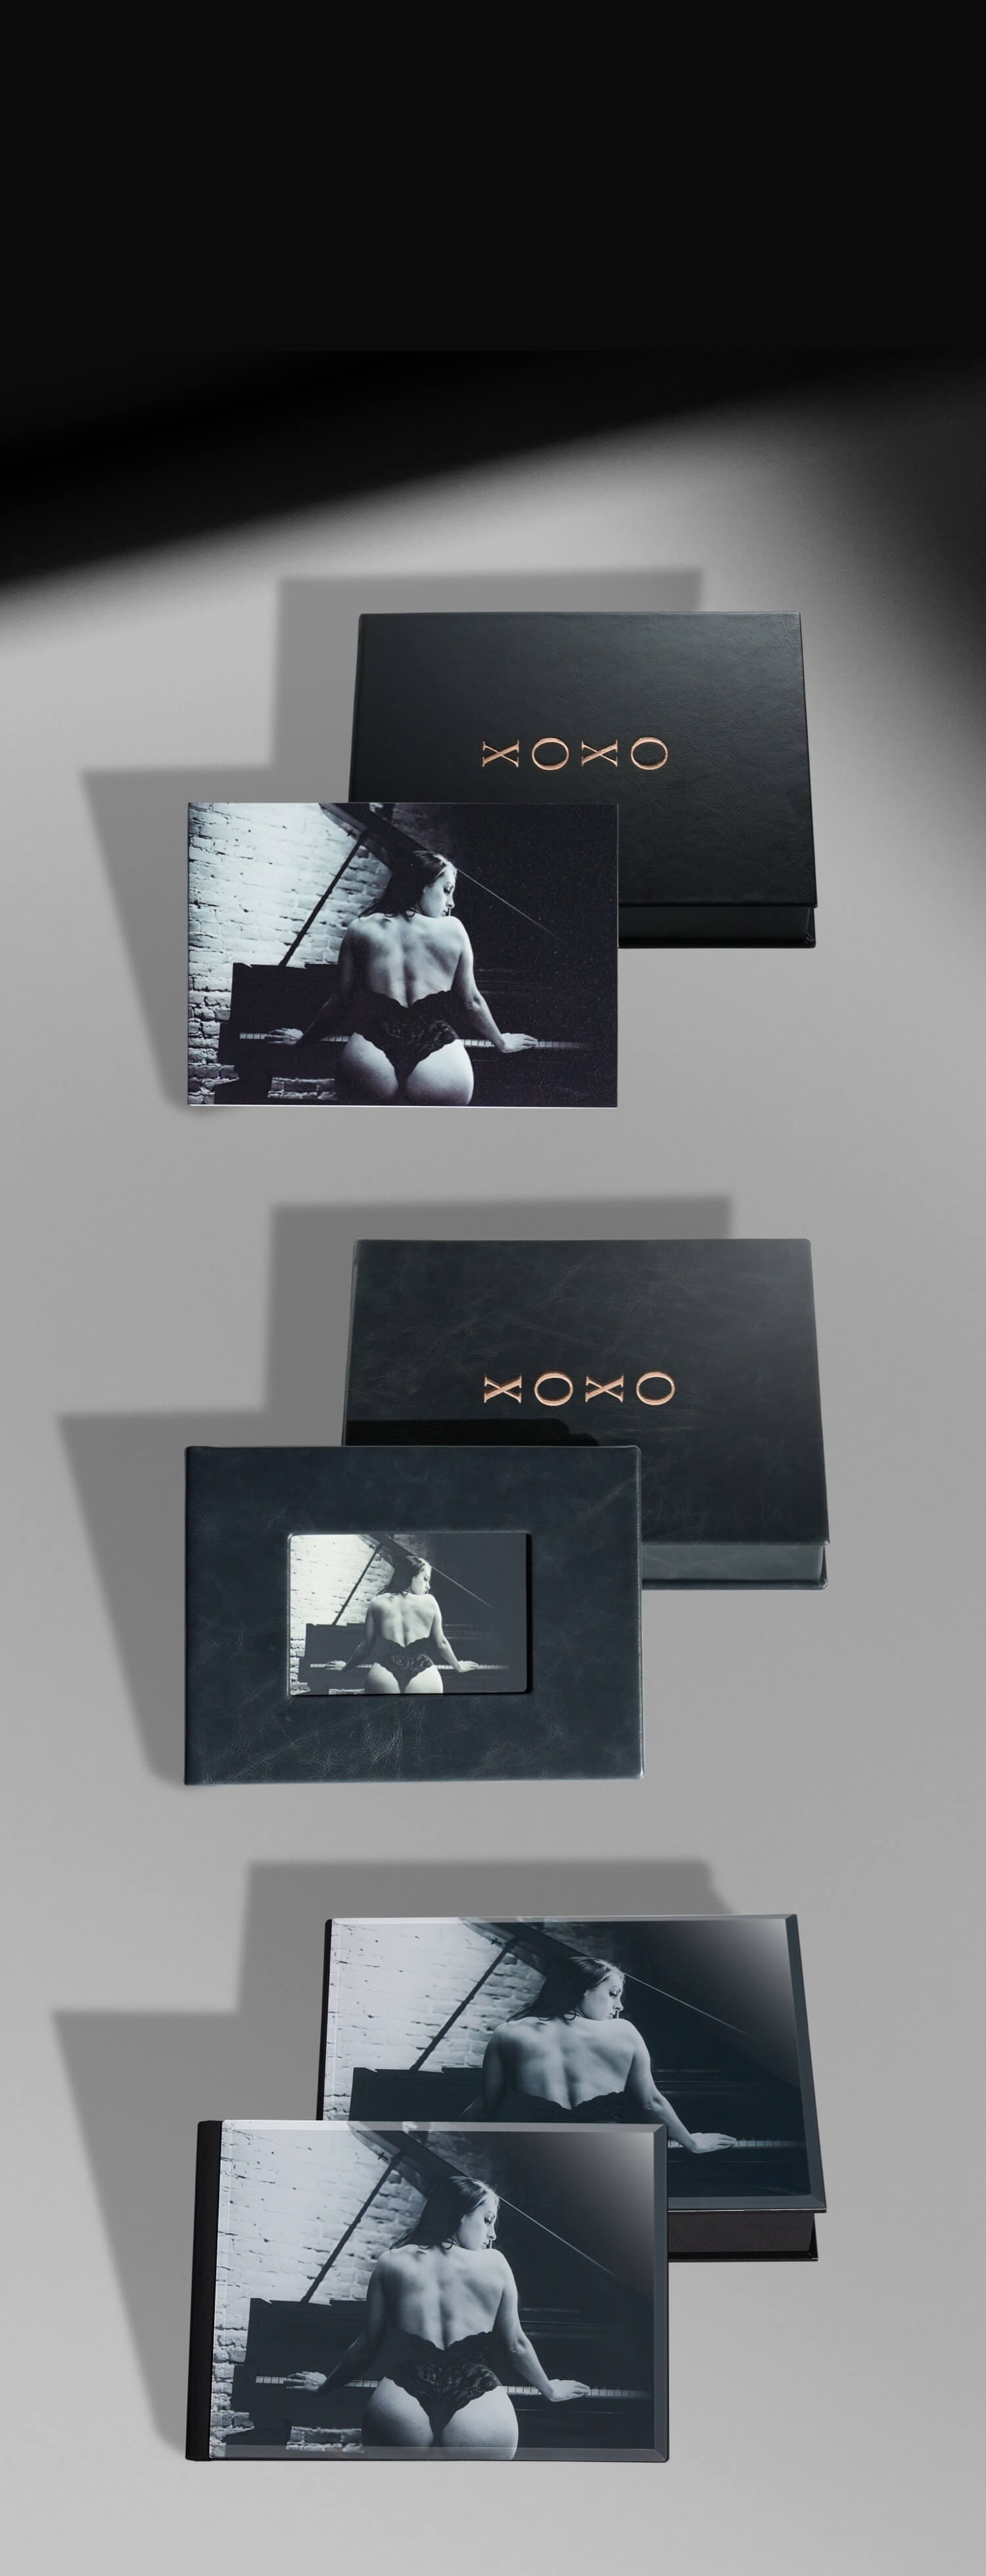 Album Boxes